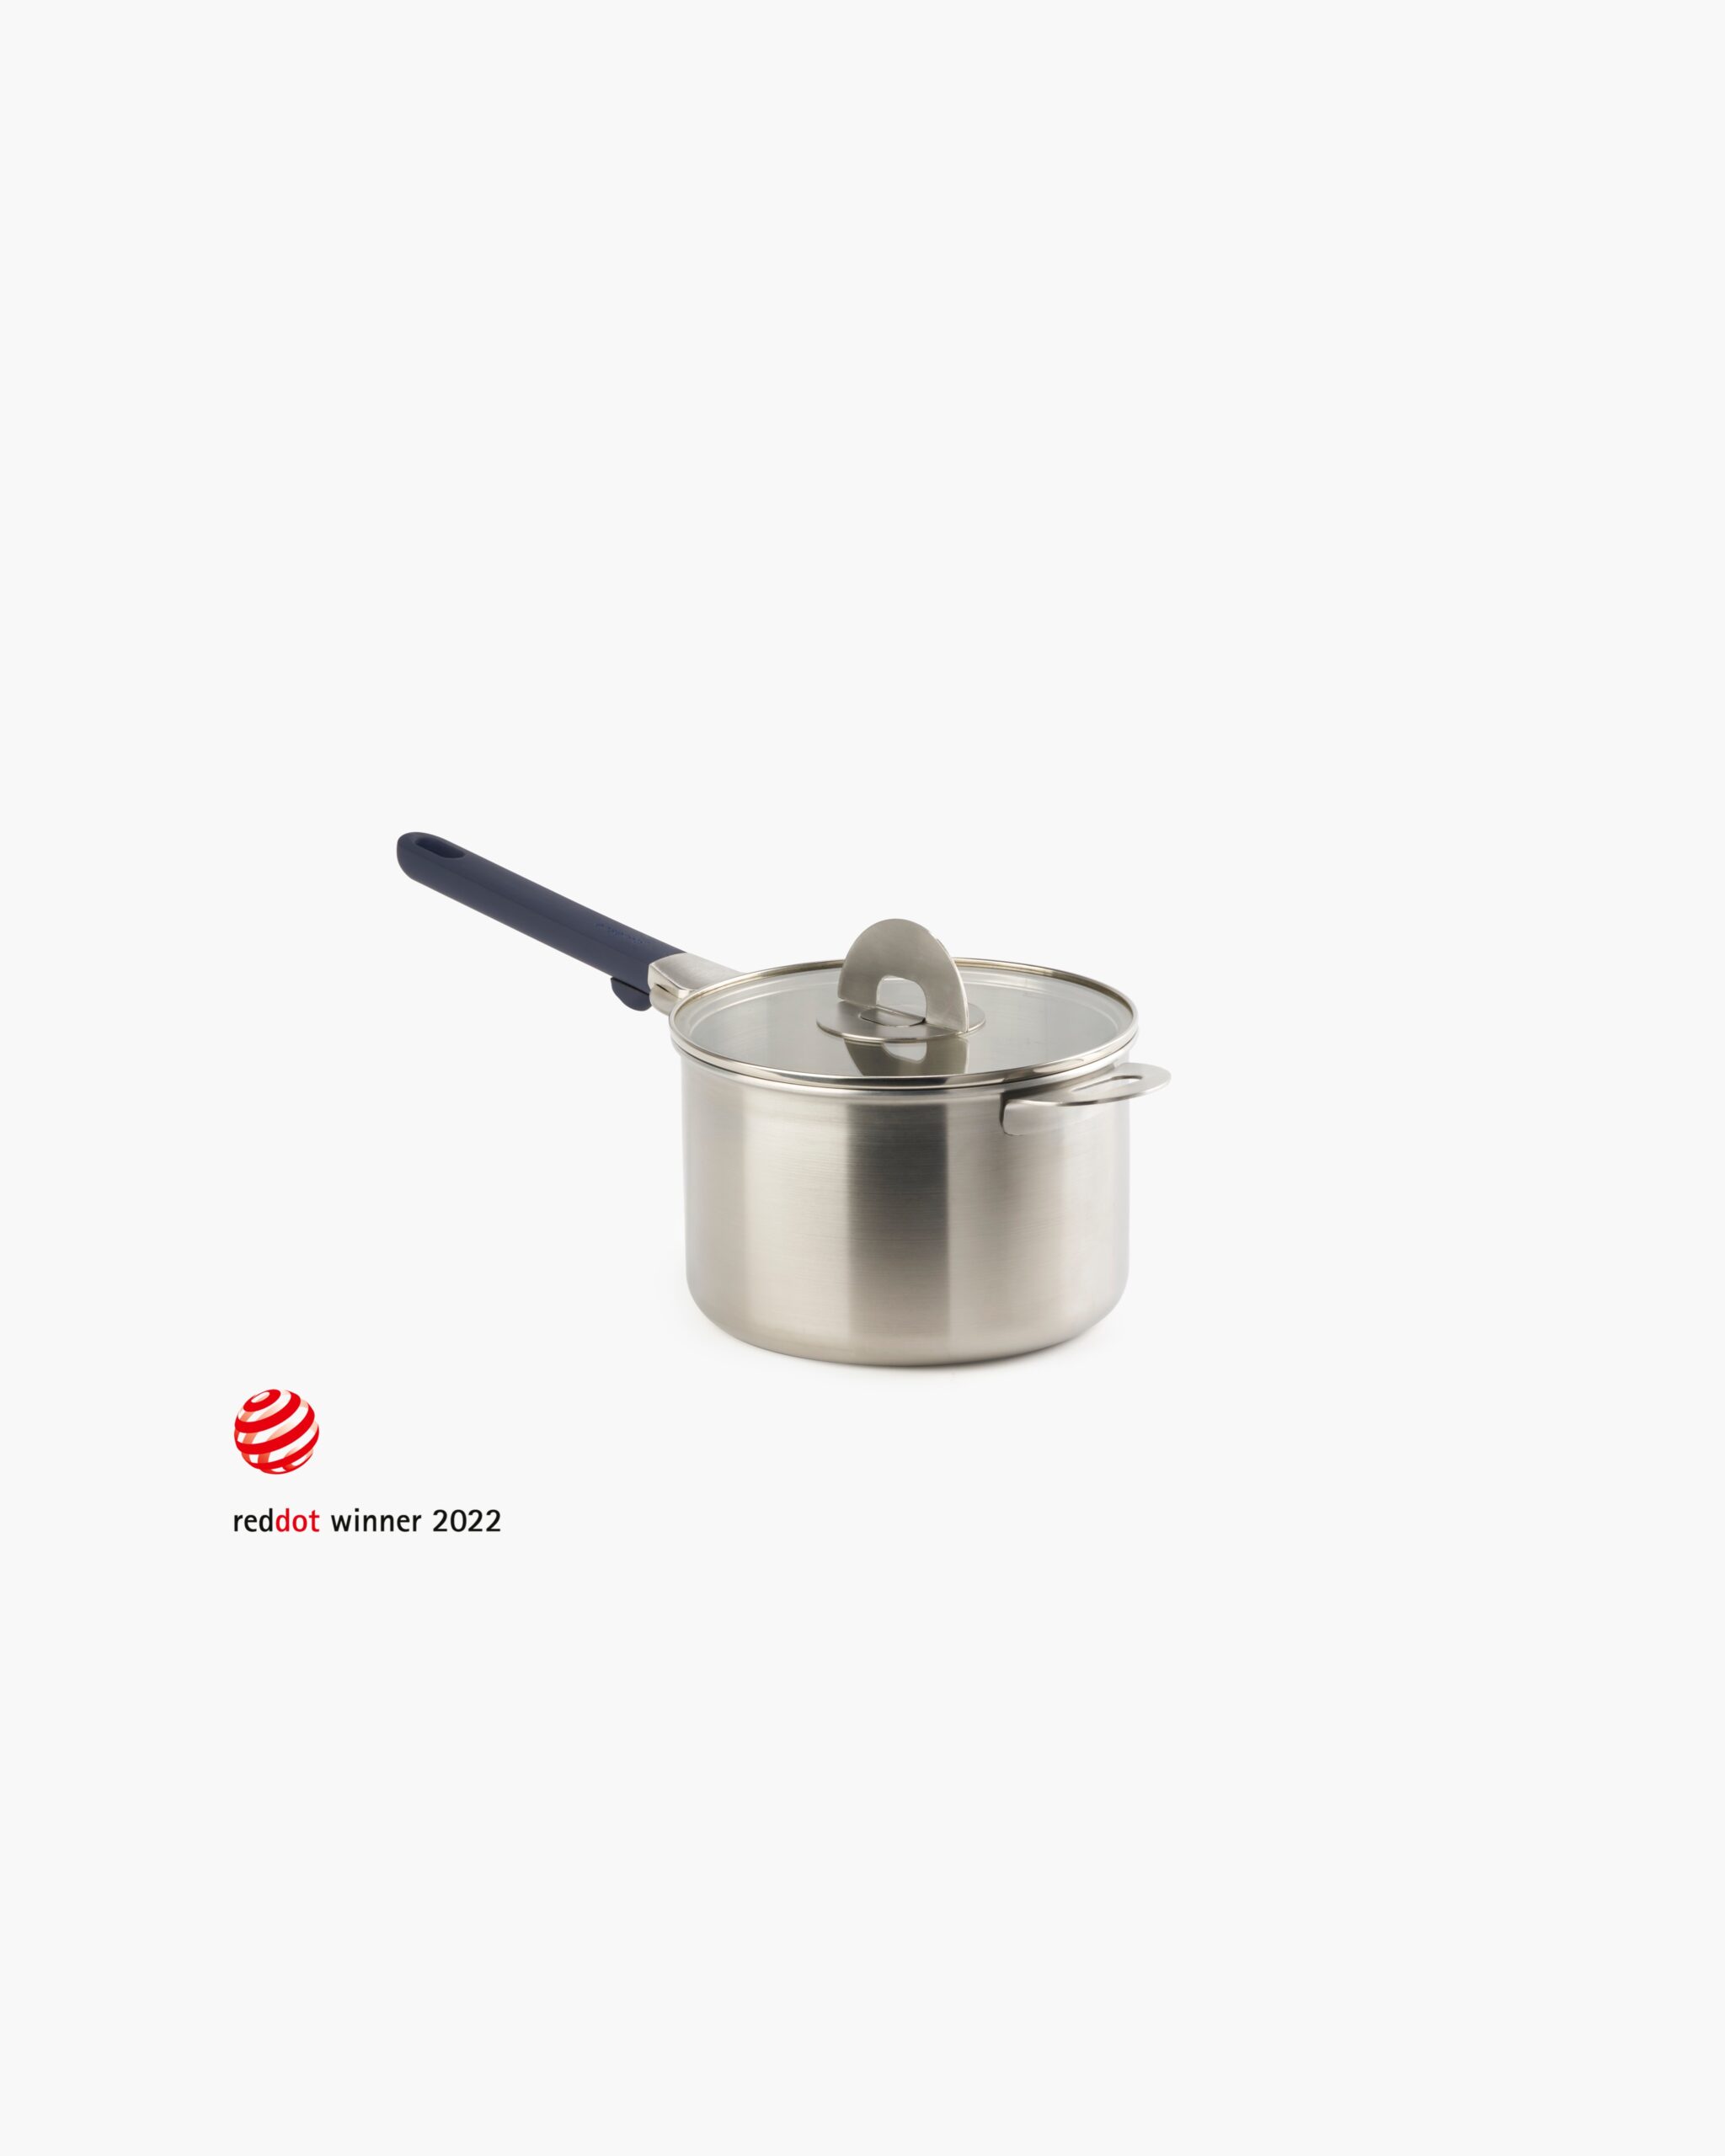 ENSEMBL Stackware Medium Saucepan Cookware Stainless Steel Red Dot Design Award Winning.